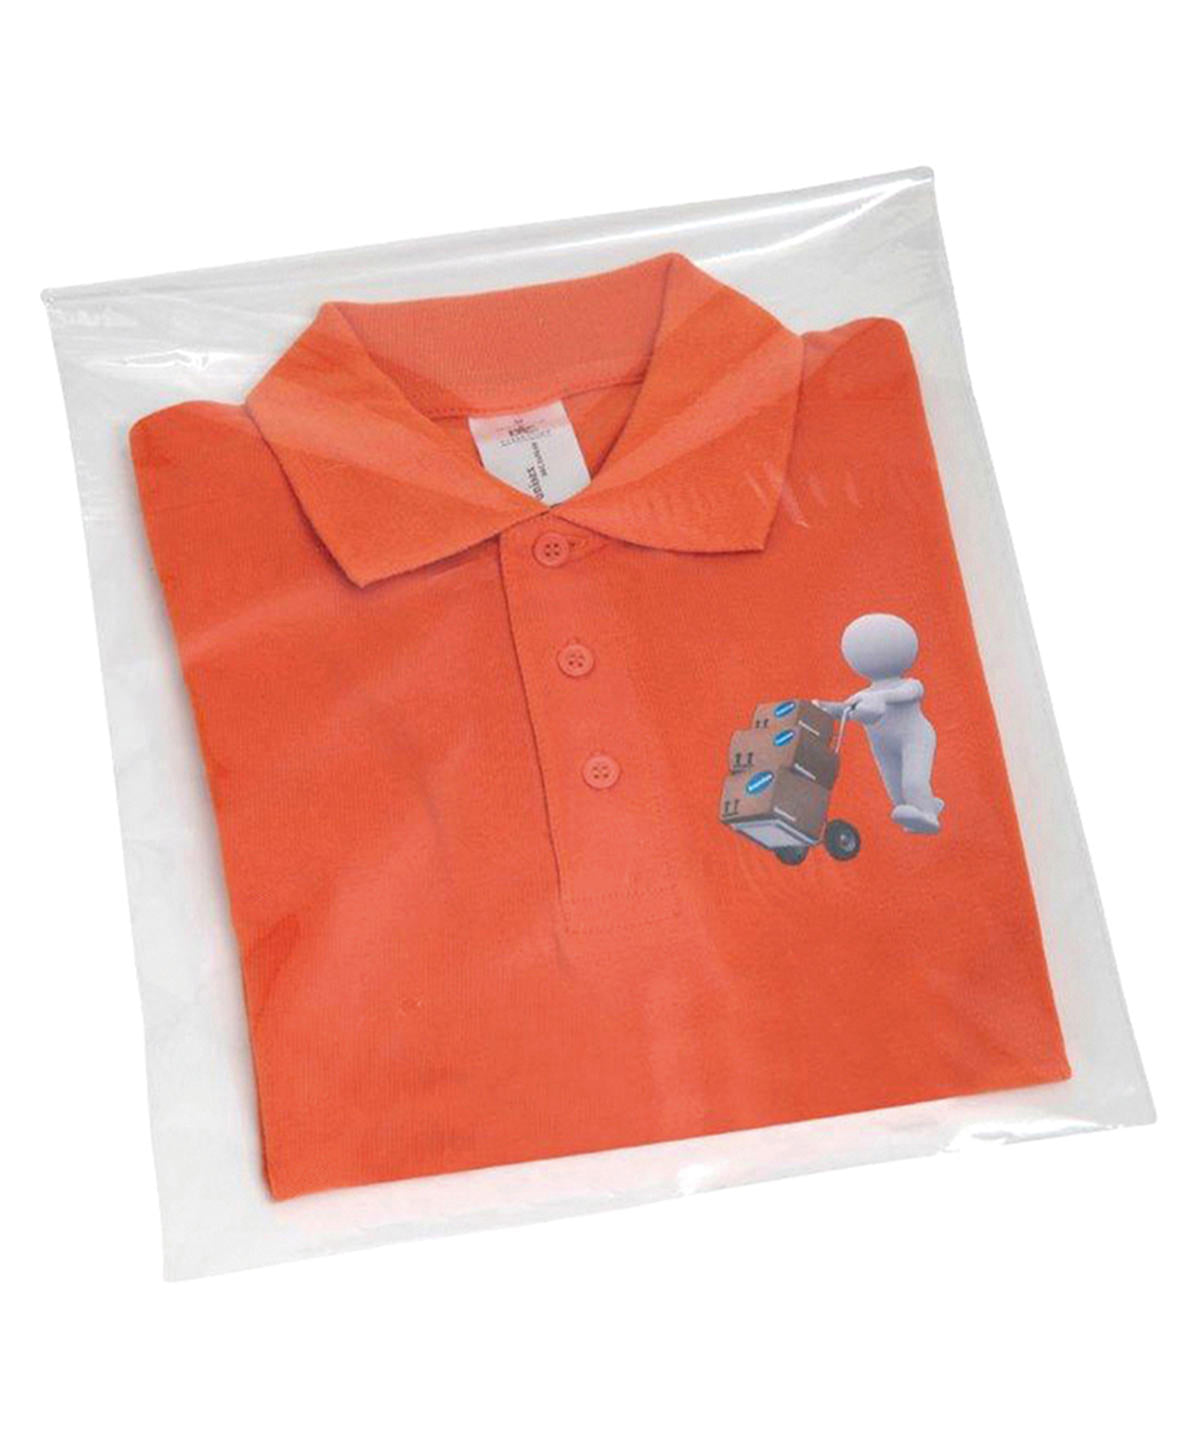 Skyrtupokar - Polypropylene Shirt Bag